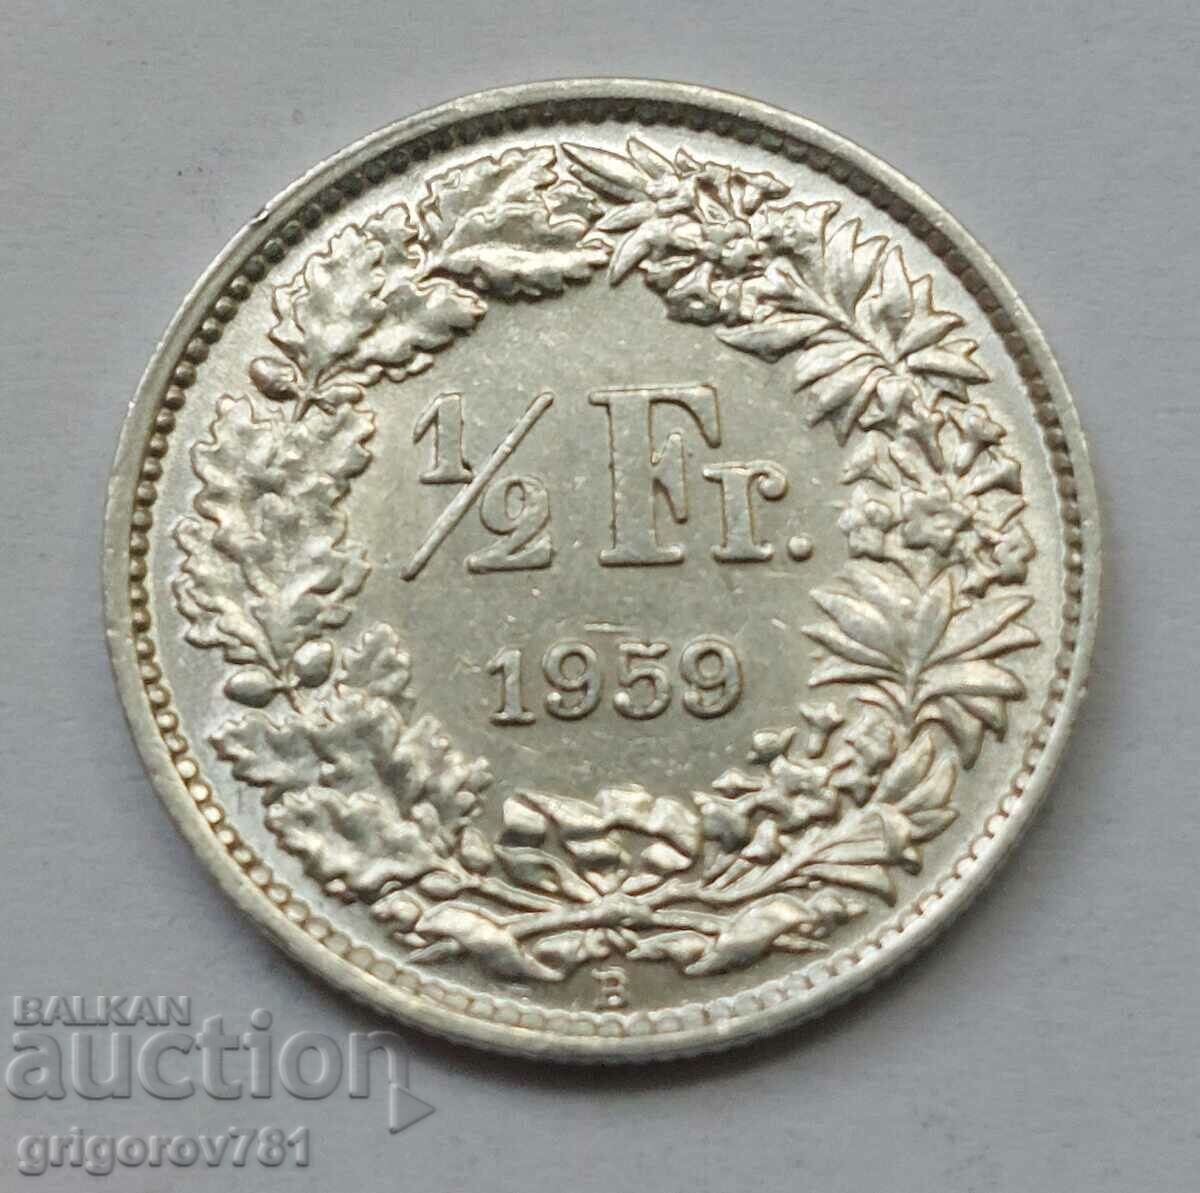 Ασημένιο φράγκο 1/2 Ελβετία 1959 Β - Ασημένιο νόμισμα #143